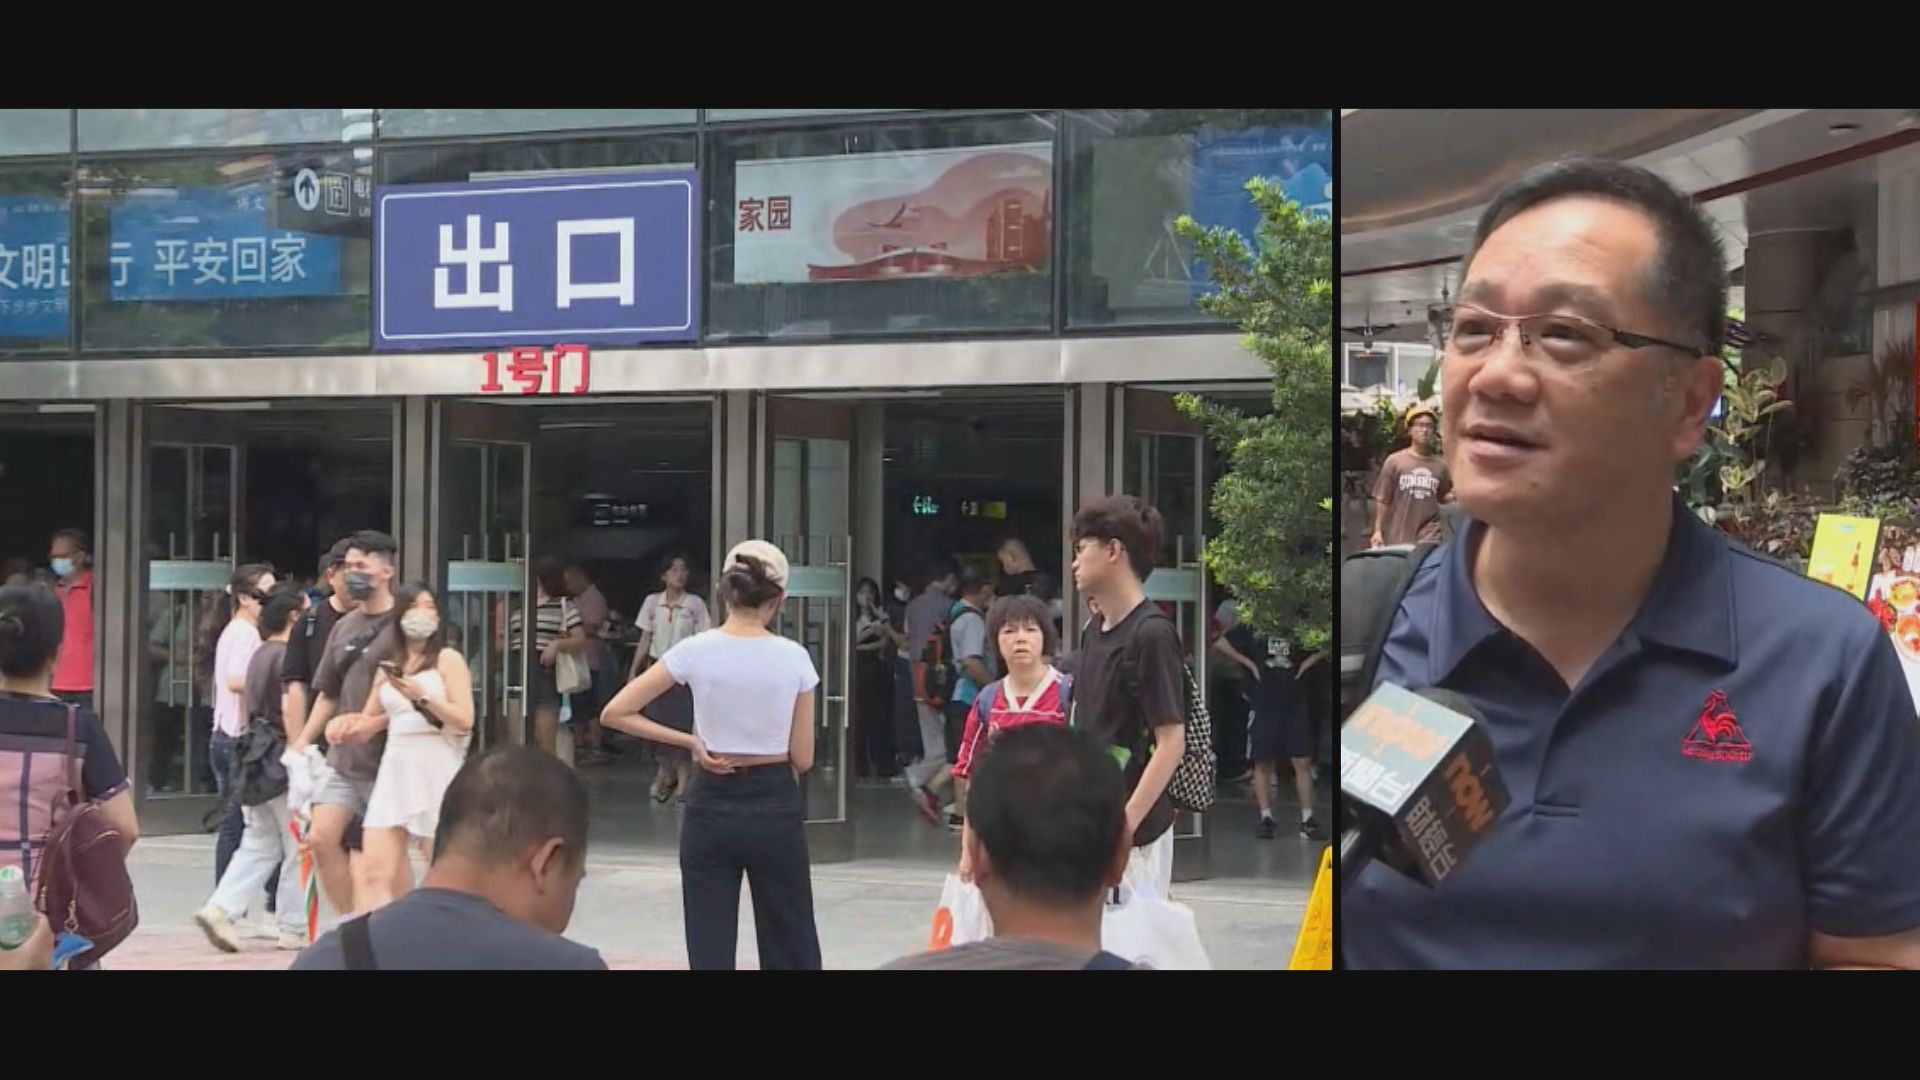 深圳推多項便利港人消費措施　遊客建議香港多辦文娛活動吸客